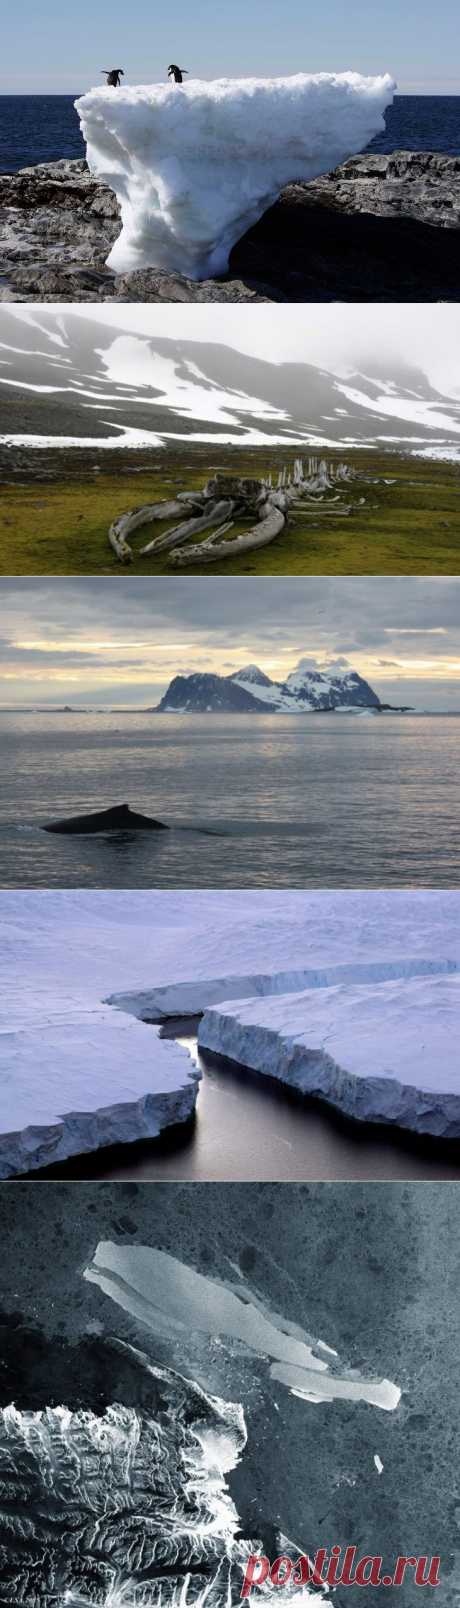 Исчезающие льды: пейзажи Антарктиды / Туристический спутник